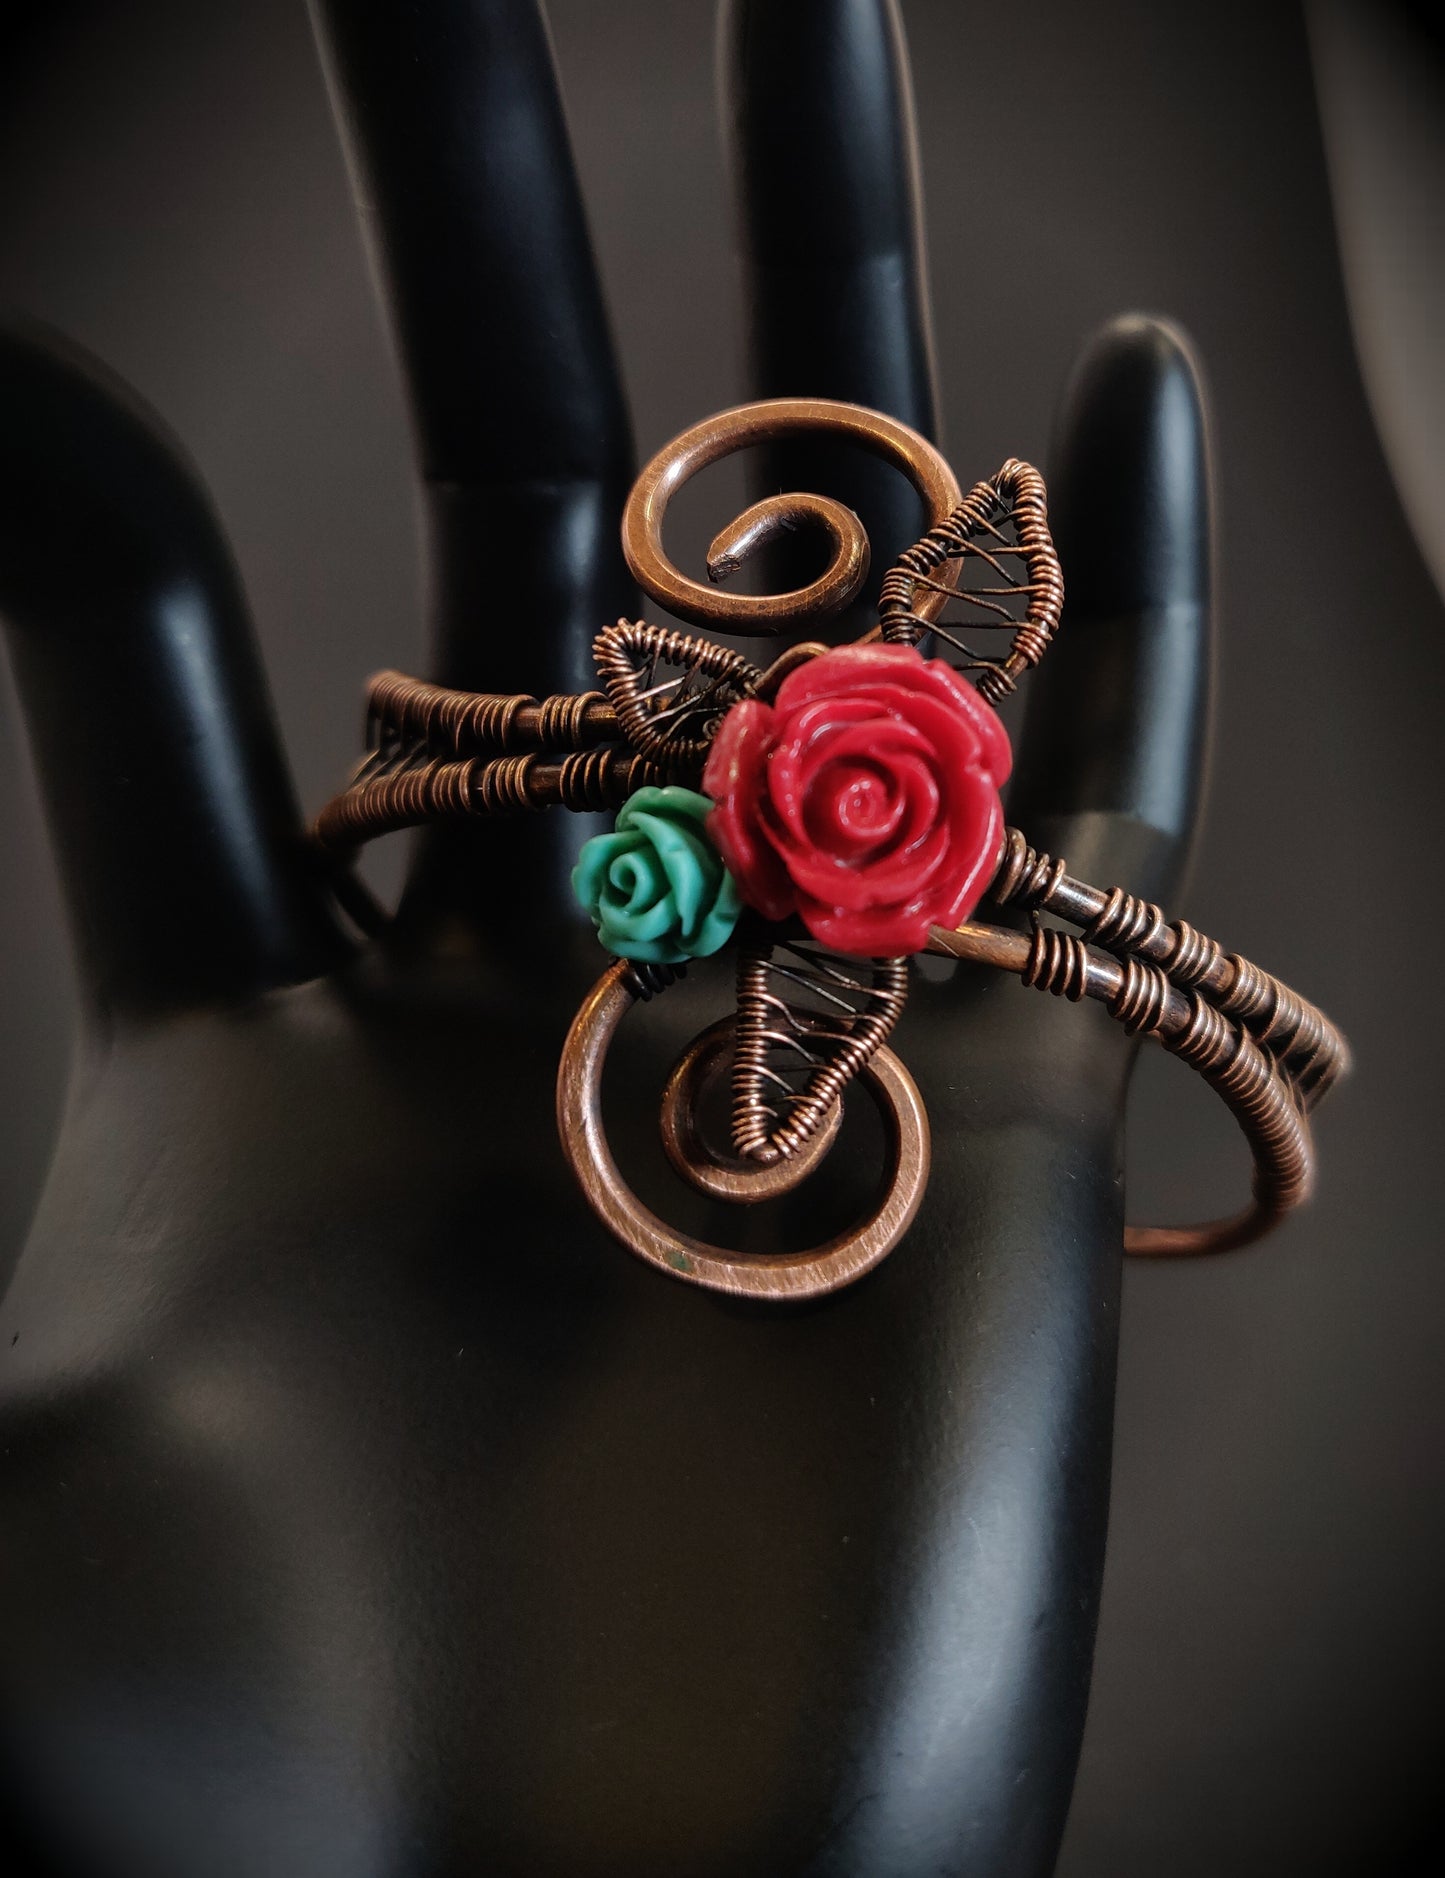 Flower Cuff Bracelet